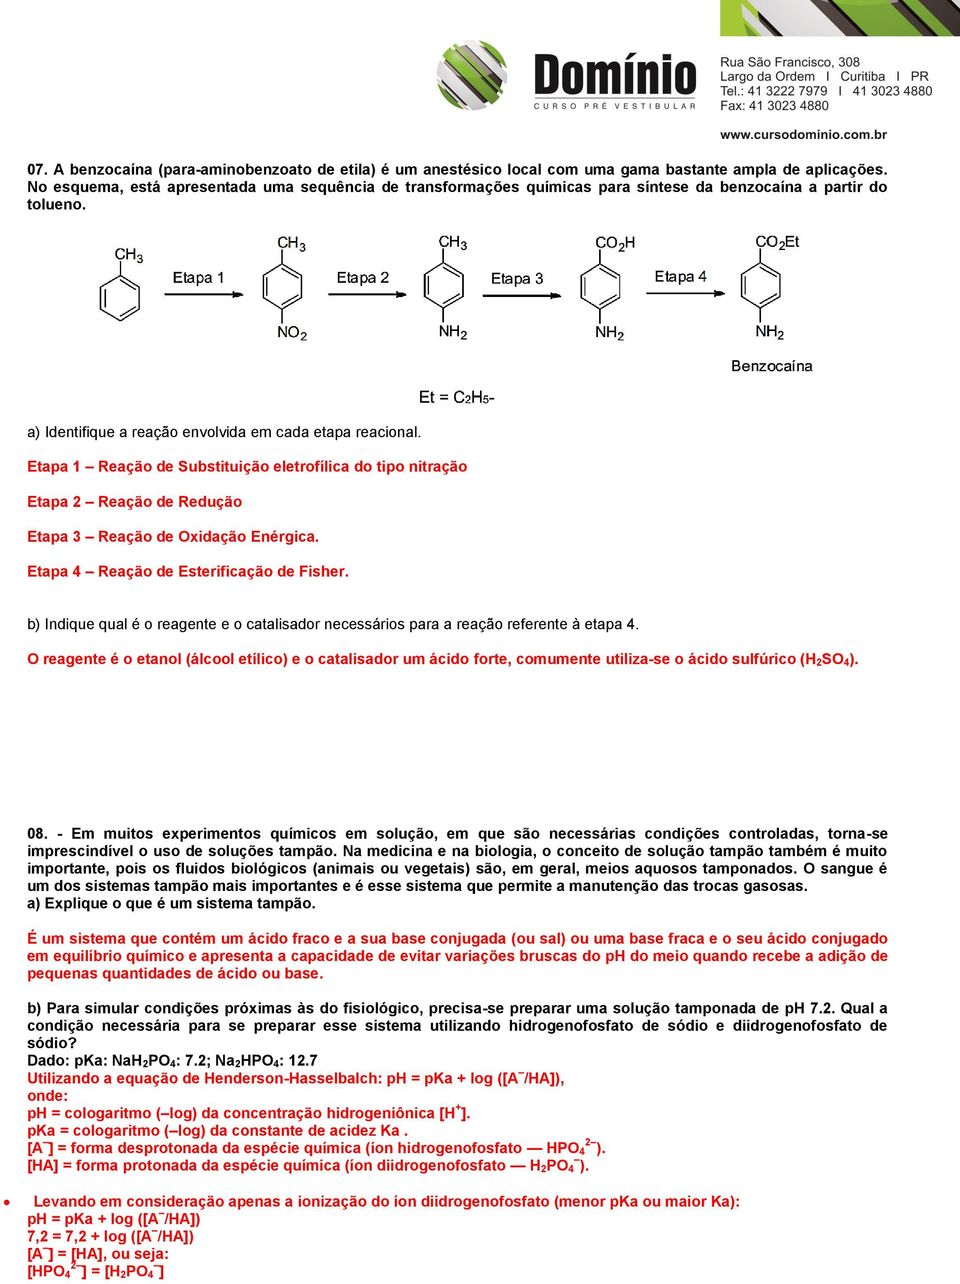 Etapa 1 Reação de Substituição eletrofílica do tipo nitração Etapa 2 Reação de Redução Etapa 3 Reação de Oxidação Enérgica. Etapa 4 Reação de Esterificação de Fisher.